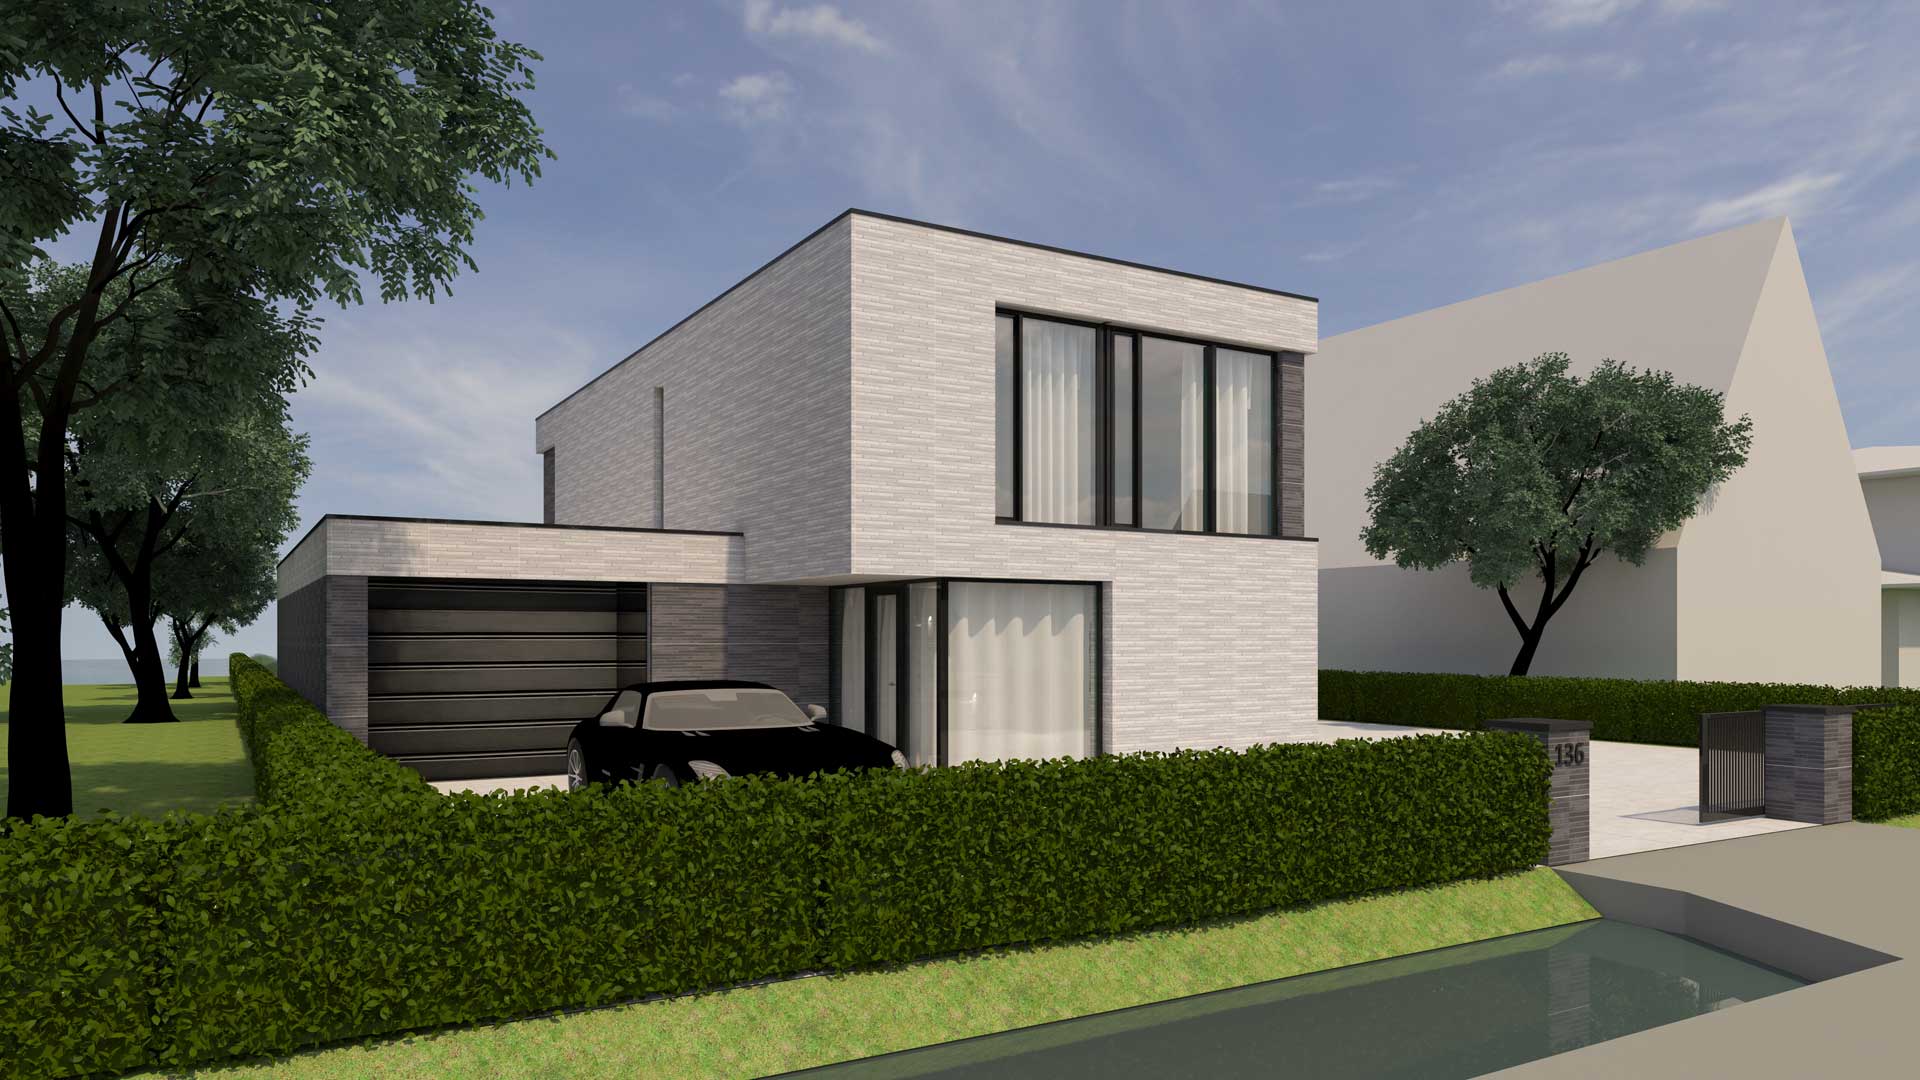 Ontwerp voor moderne nieuwbouw villa in twee kleuren metselwerk te Vinkeveen door architect Maxim Winkelaar